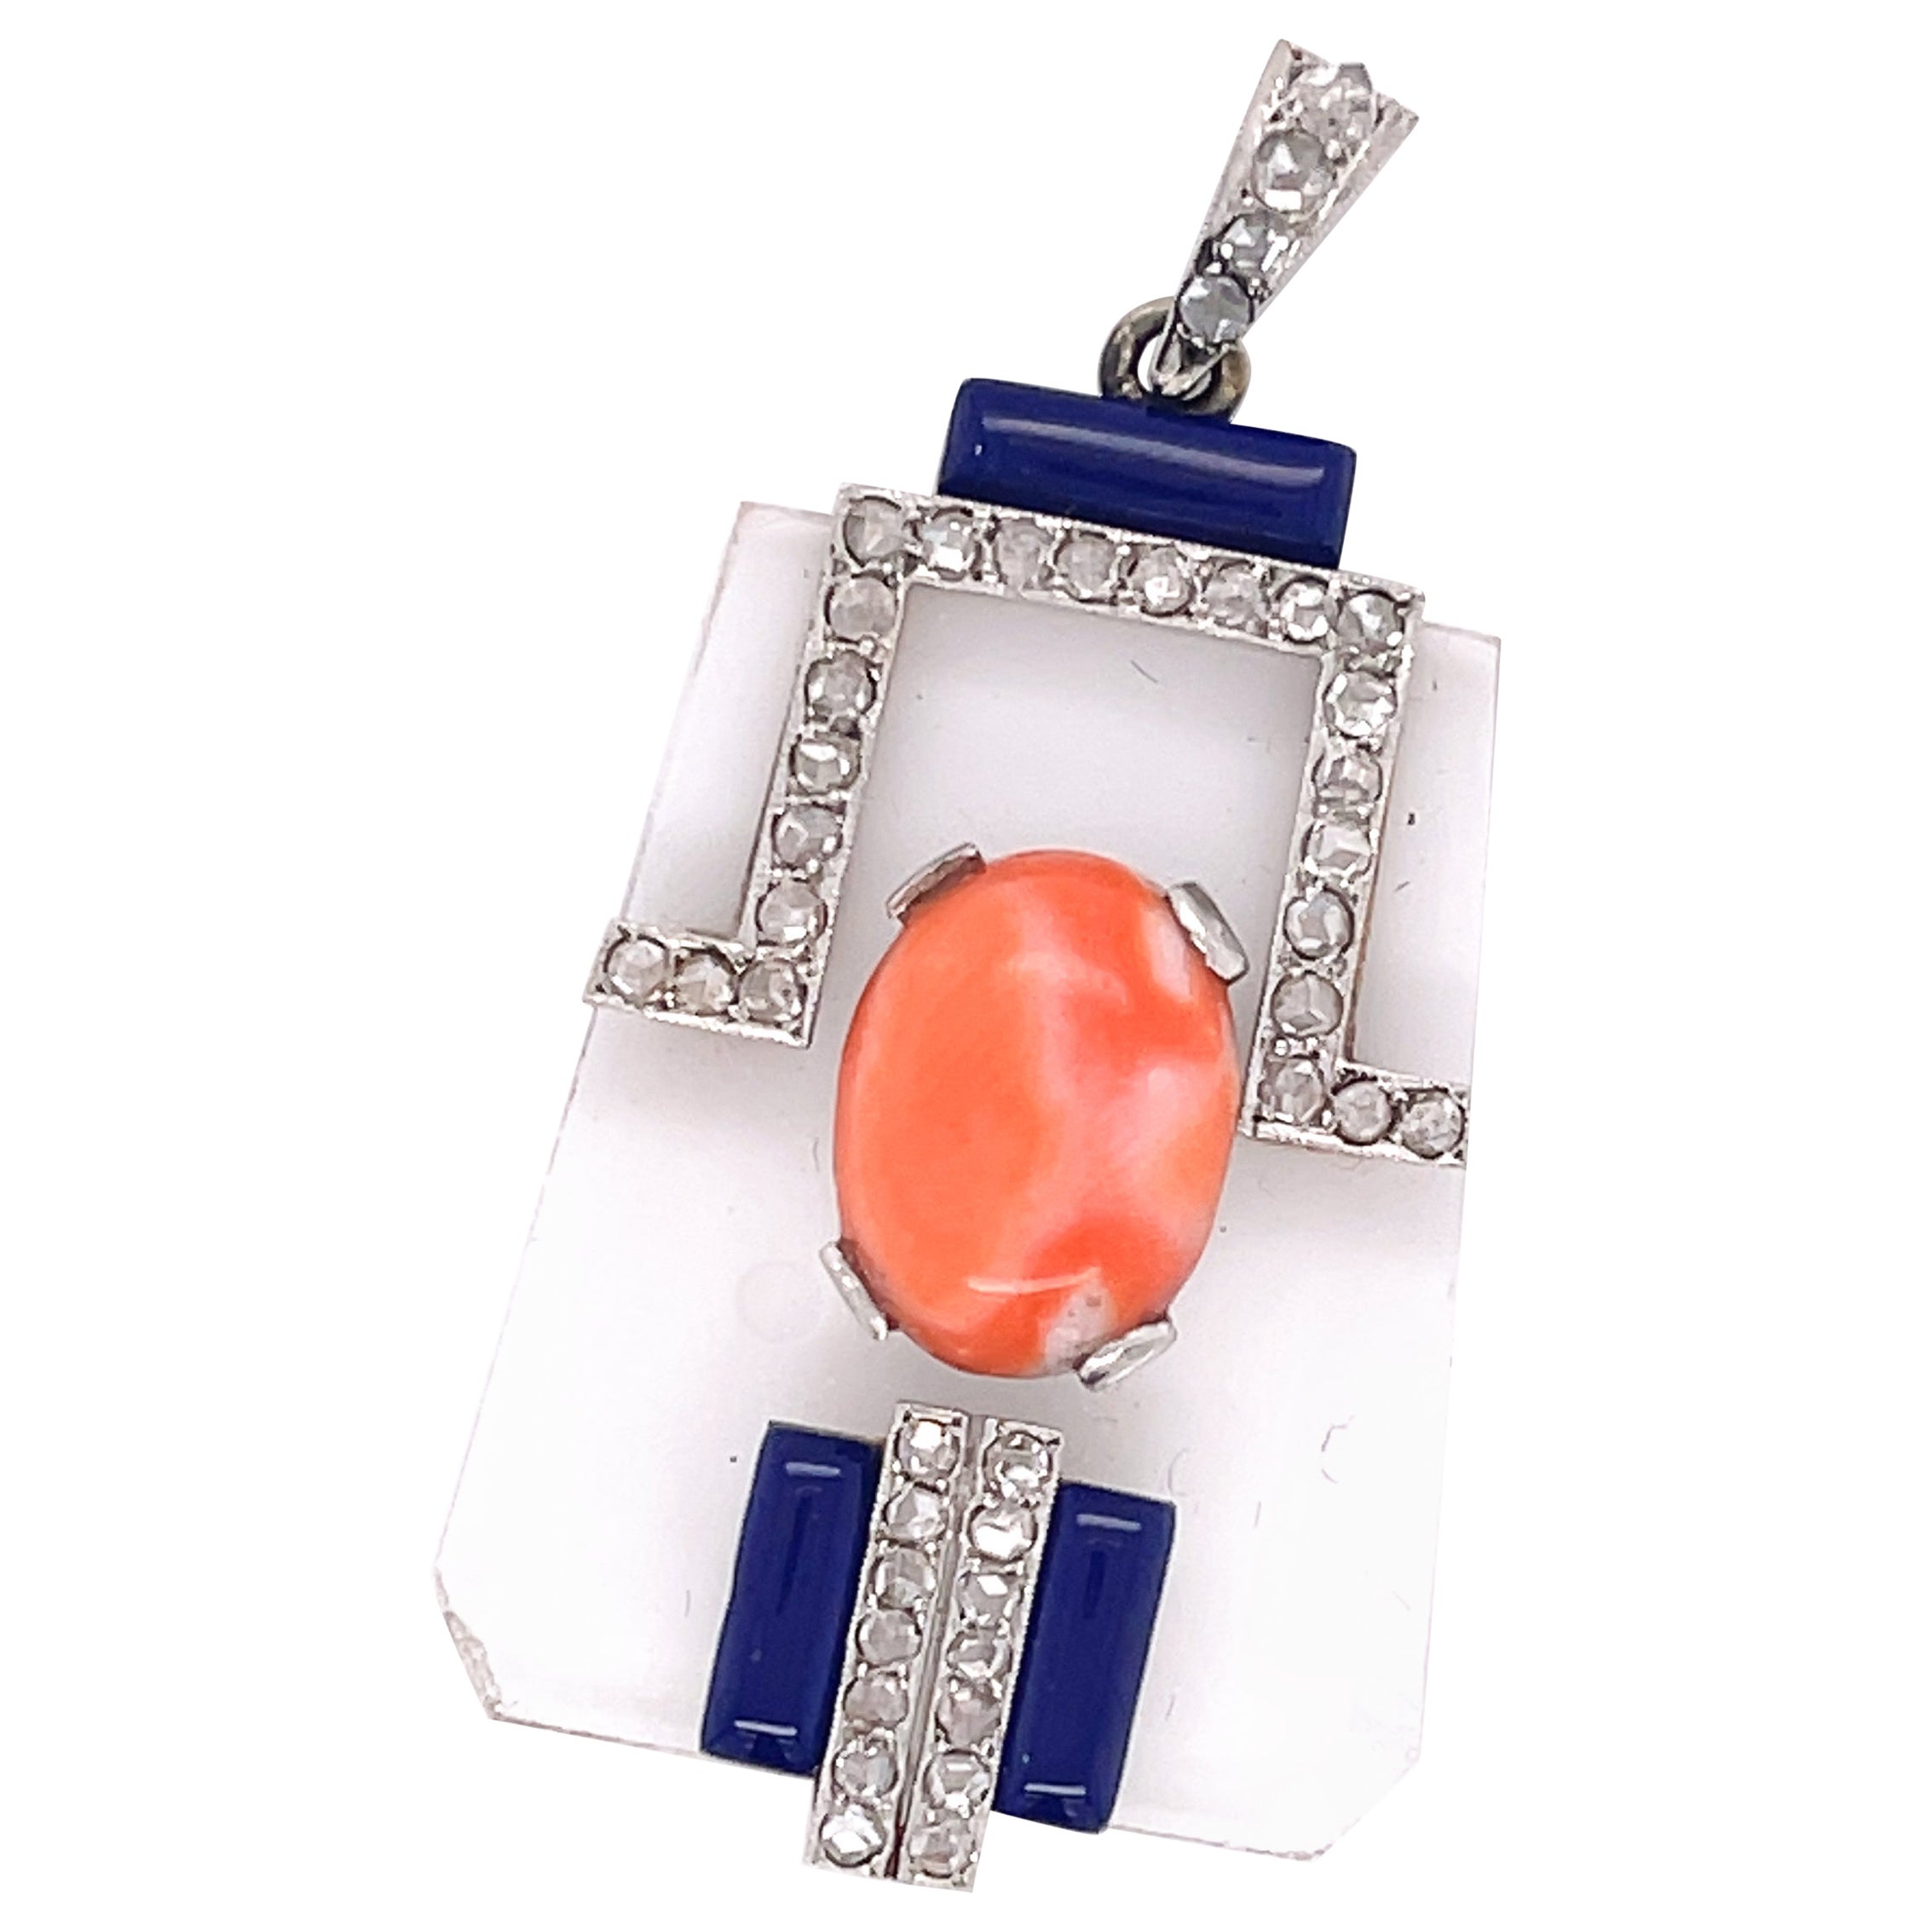 Unique Transparent Rock Quartz Necklace Pendant with Coral Enamel Center For Sale